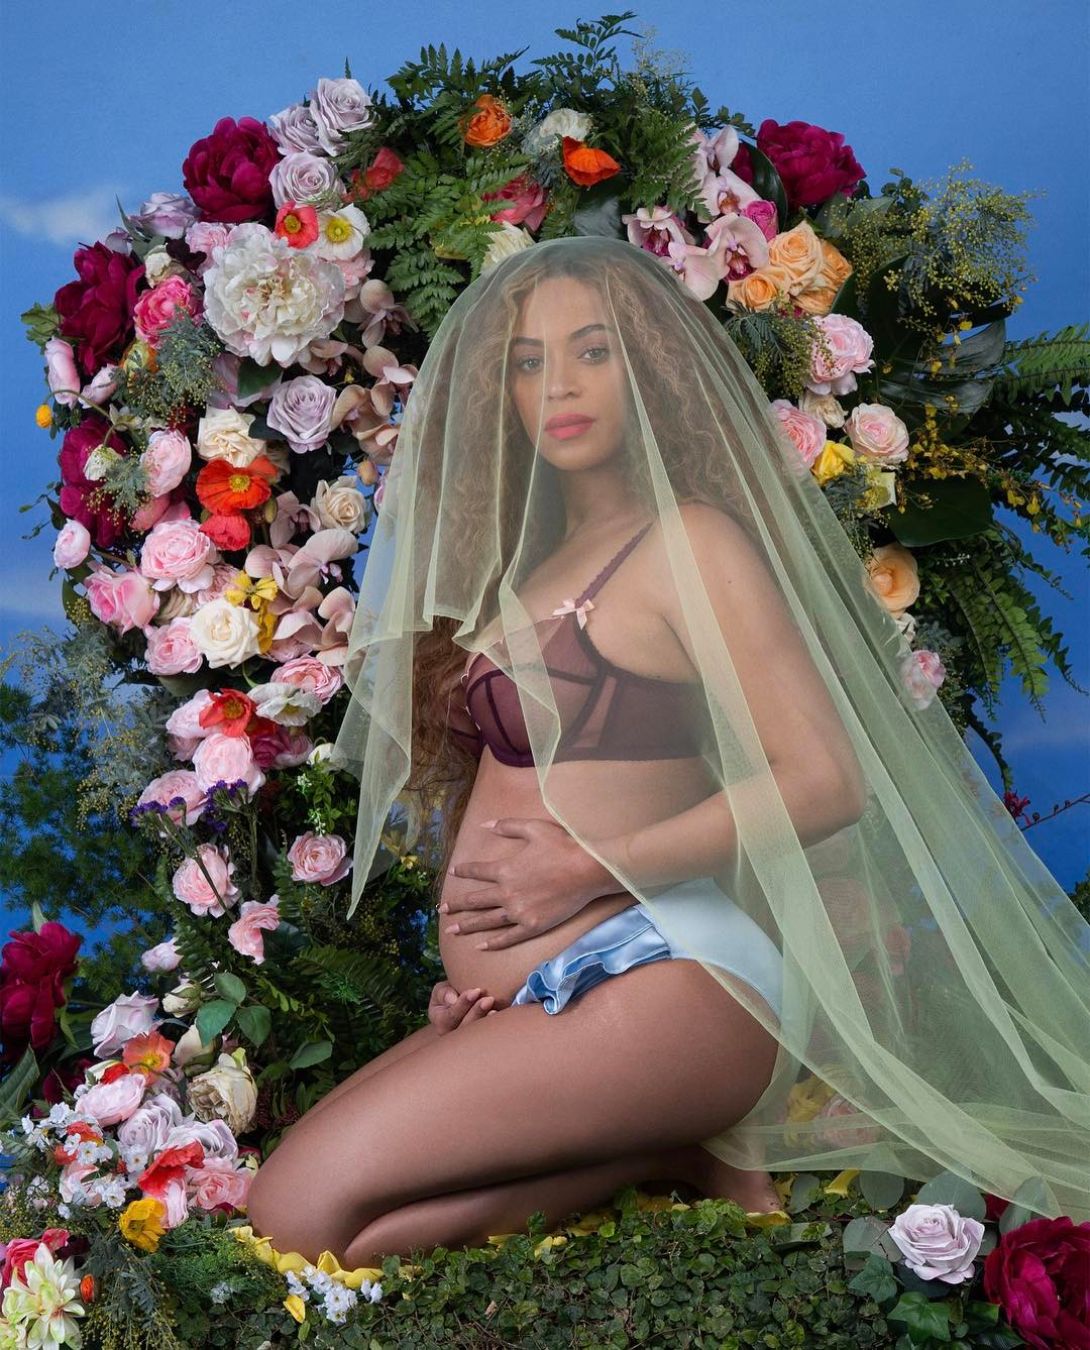 Anúncios de gravidez e tretas misteriosas: as vezes que a Beyoncé quebrou a internet (e o mundo)